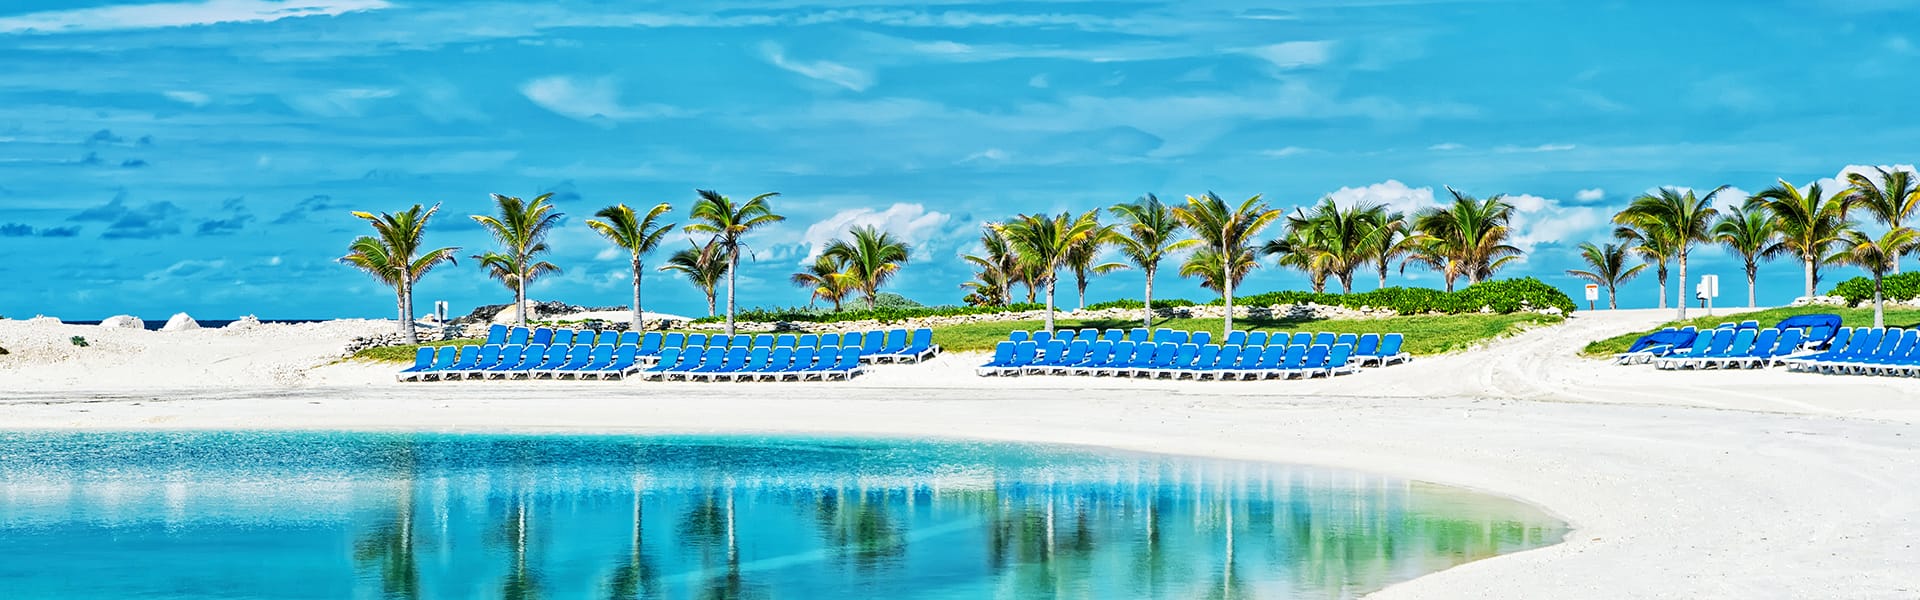 Bahamas: Great Stirrup Cay, Key West & Nassau